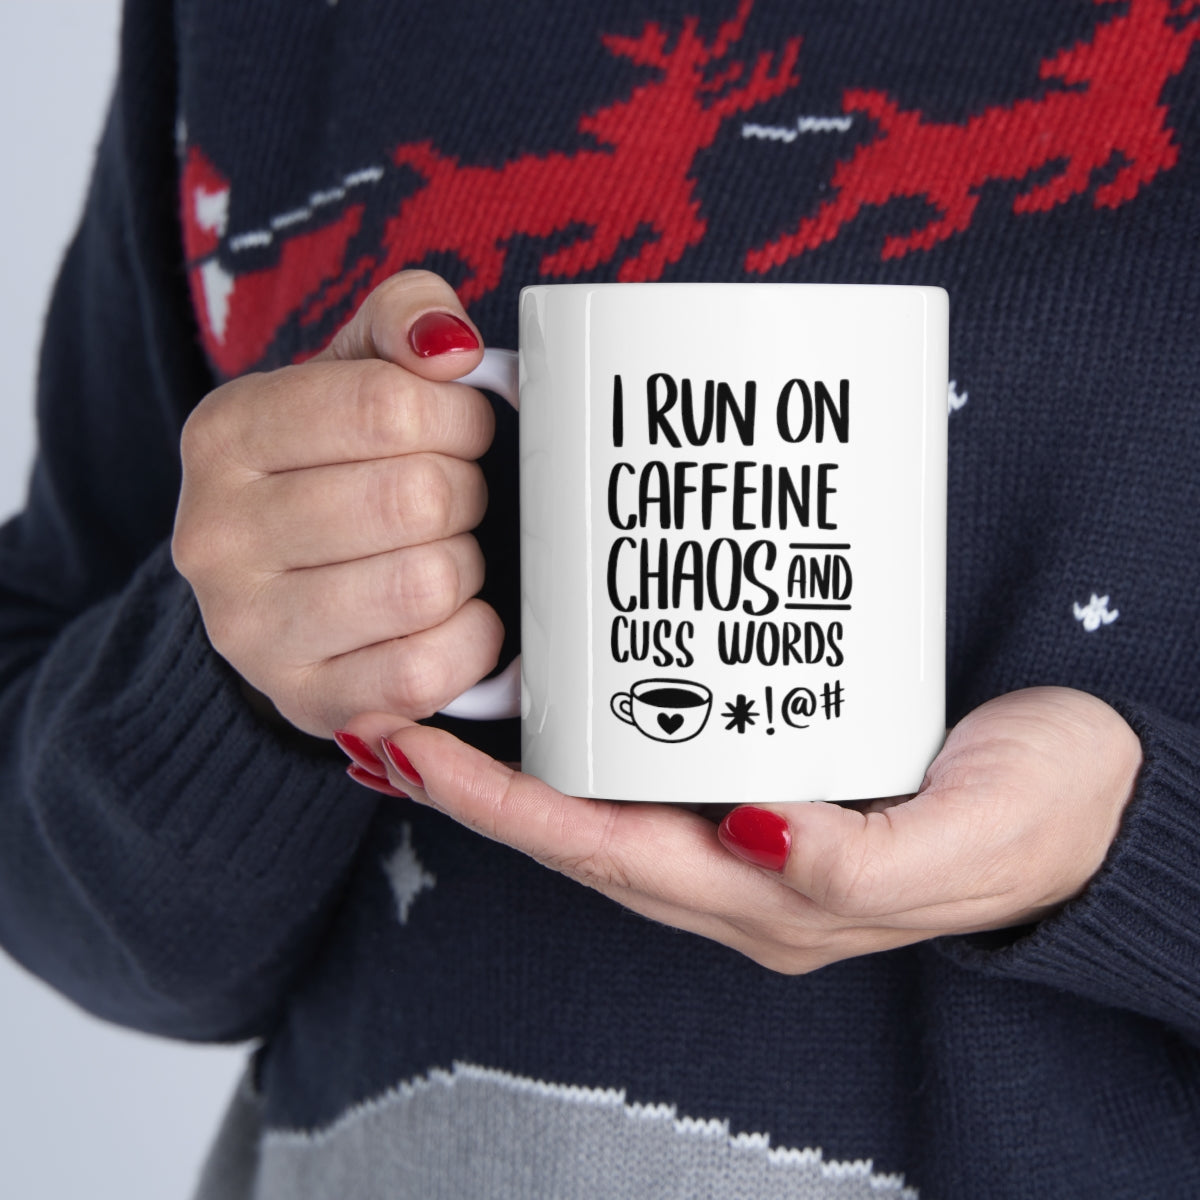 I Run on Caffeine and Chaos Ceramic Mug 11oz